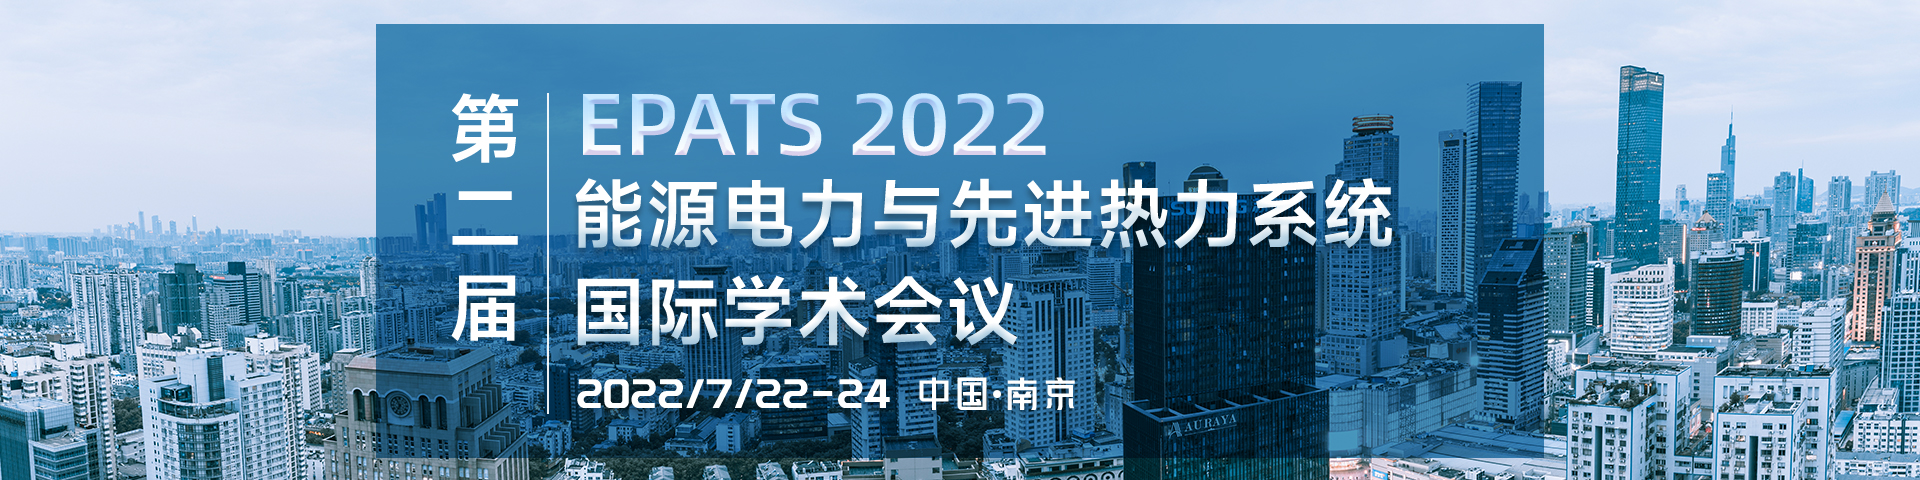 7月南京-EPATS2022-艾思平台上线平台1920-林微0322.jpg